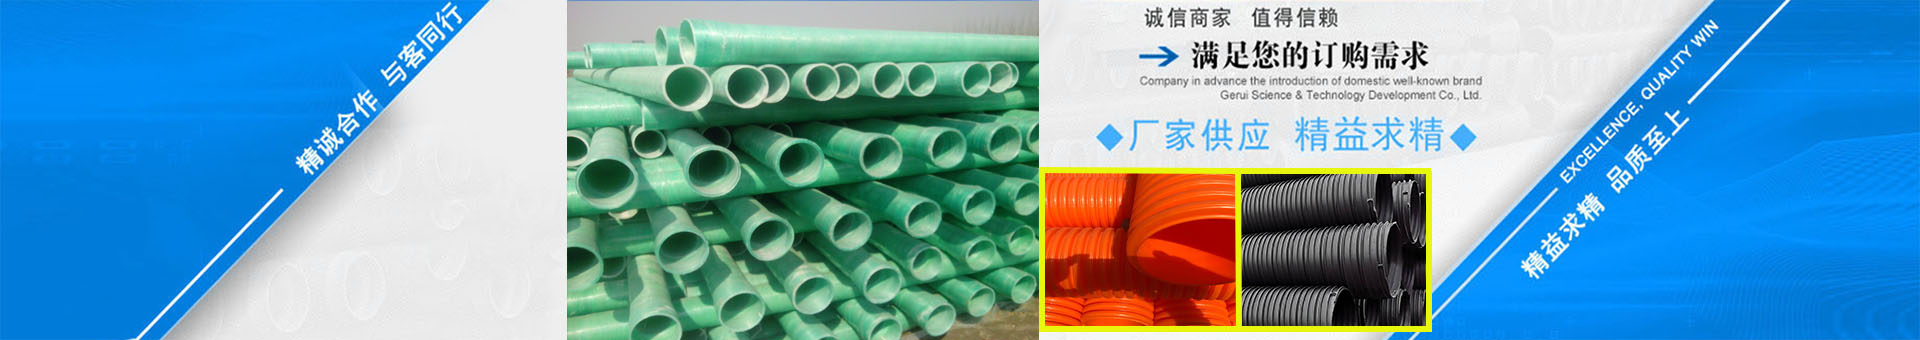 四川佳永管业有限公司,塑料检查井,HDPE双壁波纹管,电力管,排水管,给水管